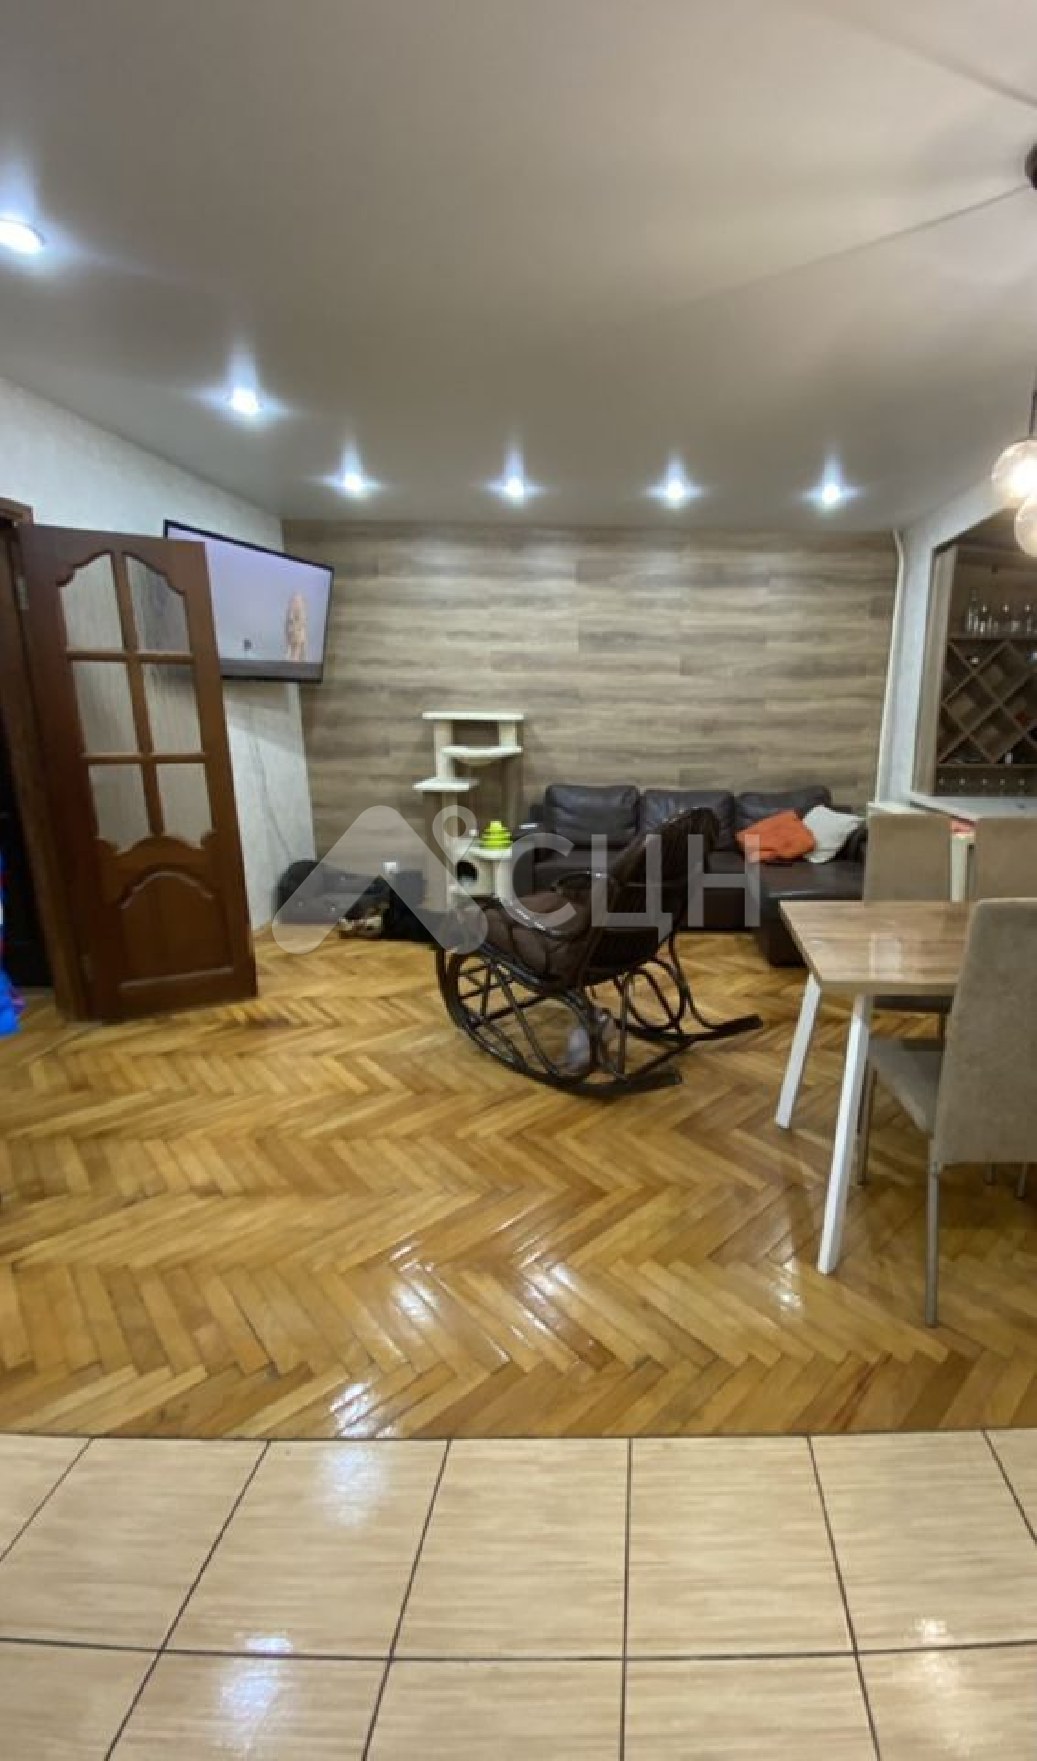 Цены на жилье в Сарове
: Г. Саров, улица Некрасова, 9, 3-комн квартира, этаж 7 из 9, продажа.